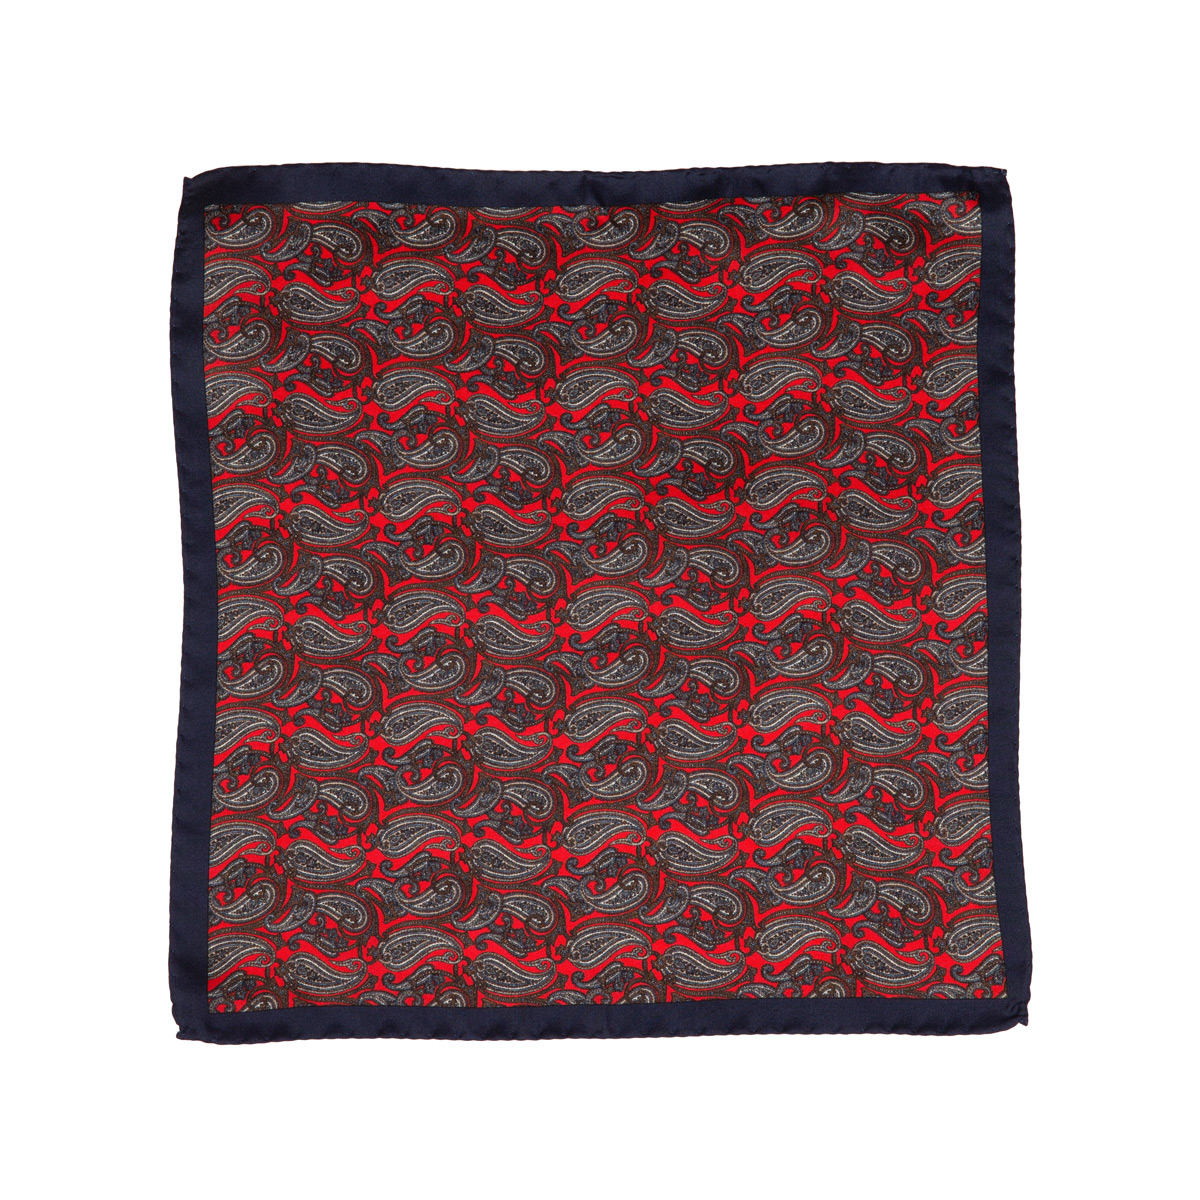 Stoff vom Einstecktuch aus Seidentwill mit Paisley-Muster in rot